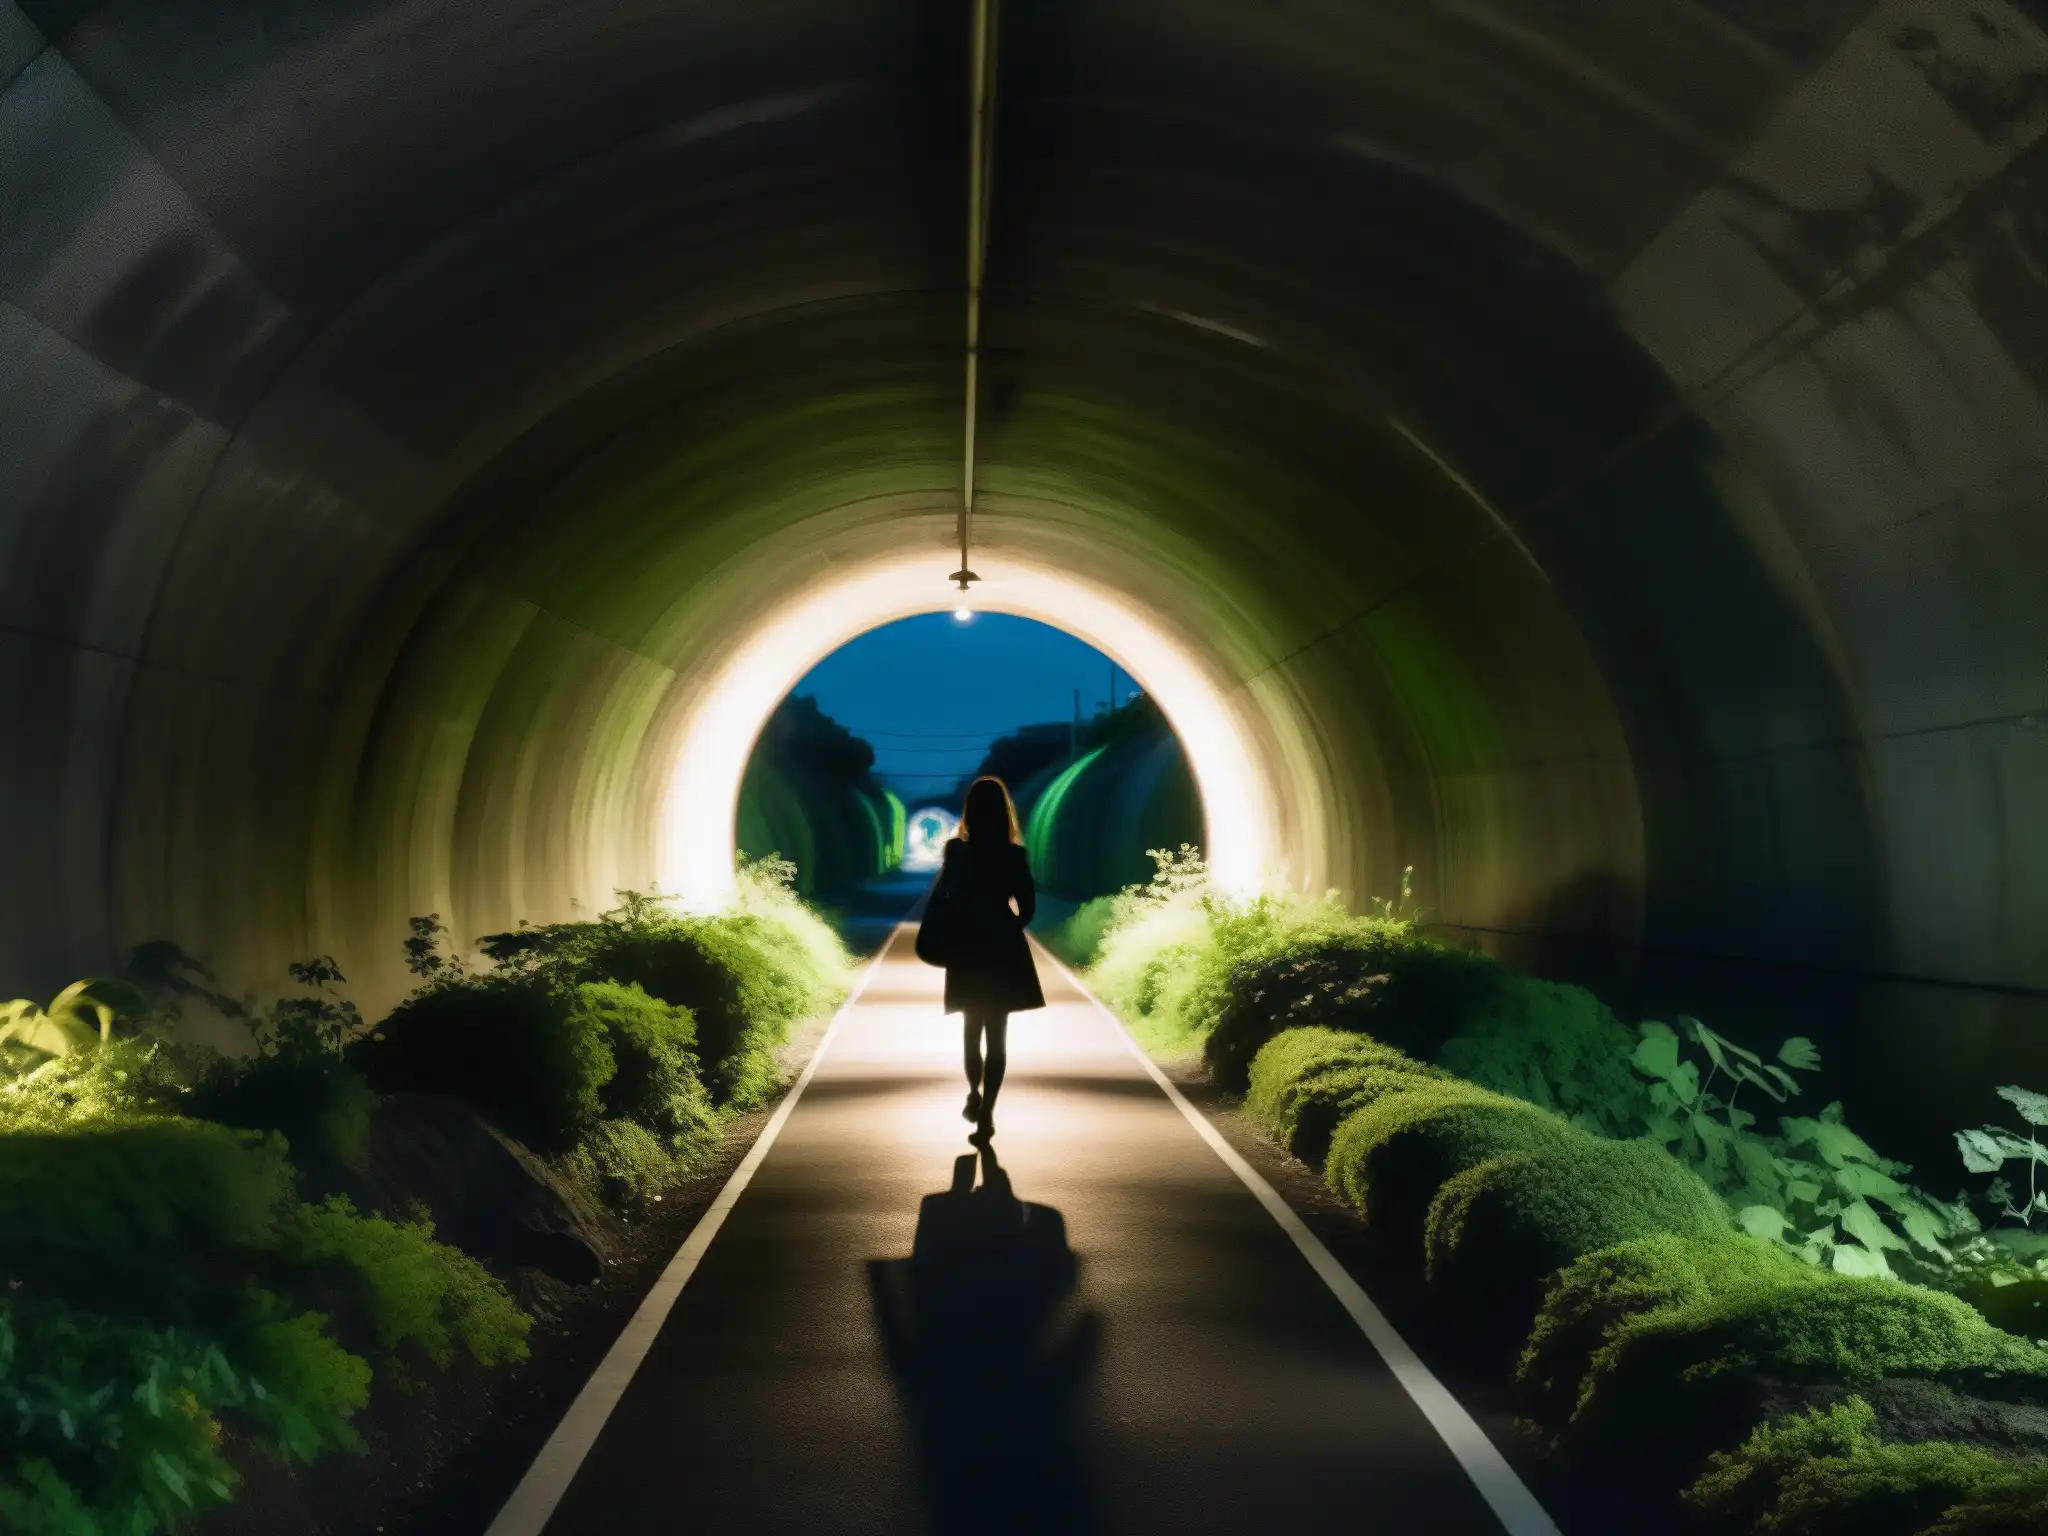 Silueta borrosa de la Mujer del Túnel de Yamate en la misteriosa pasarela nocturna rodeada de vegetación y luz tenue